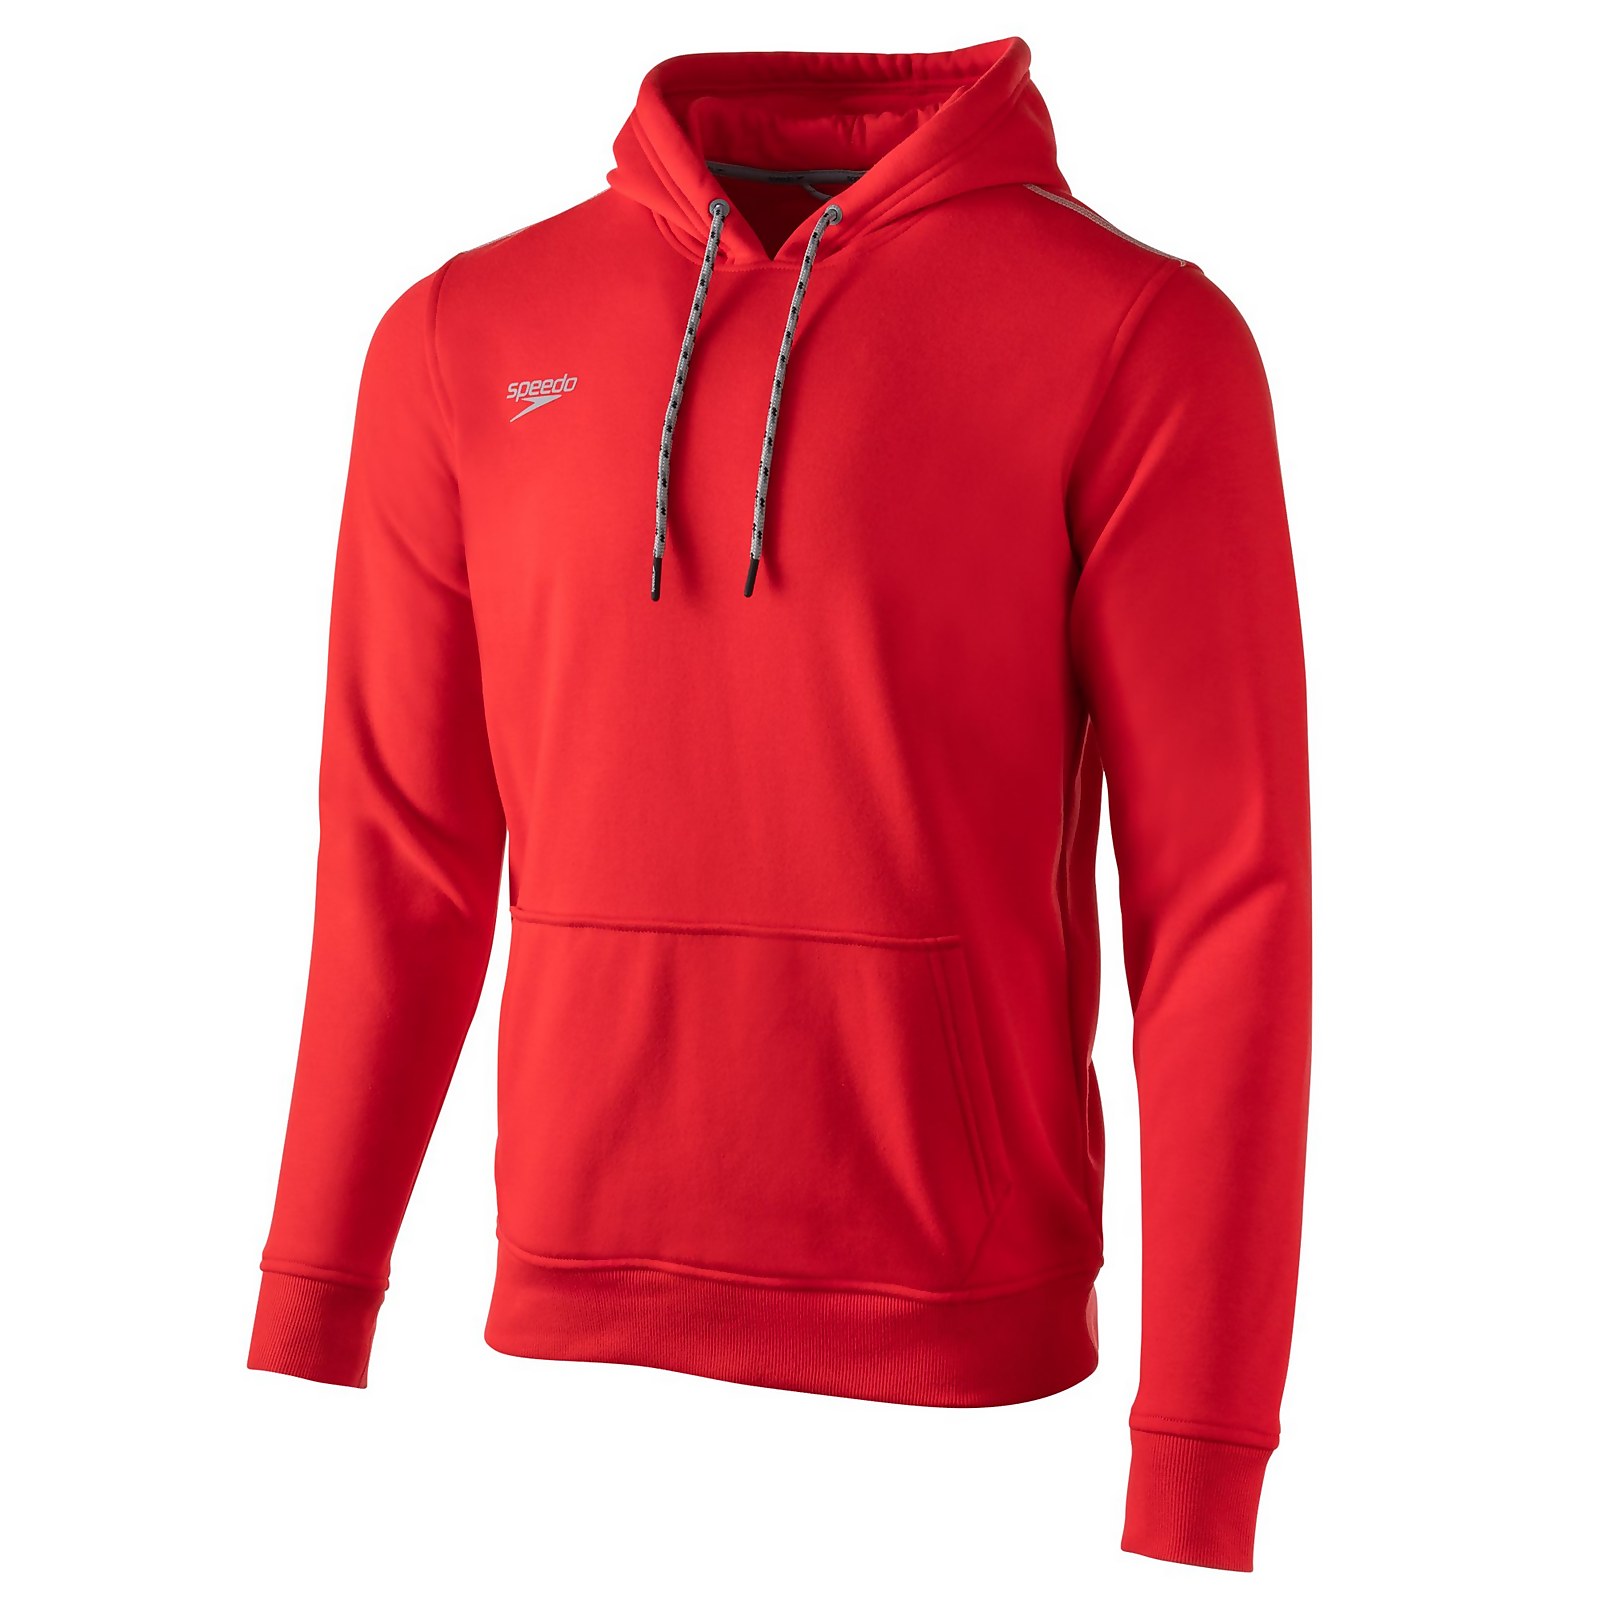 Speedo  Long Sleeve Hooded Sweatshirt - L    : Red